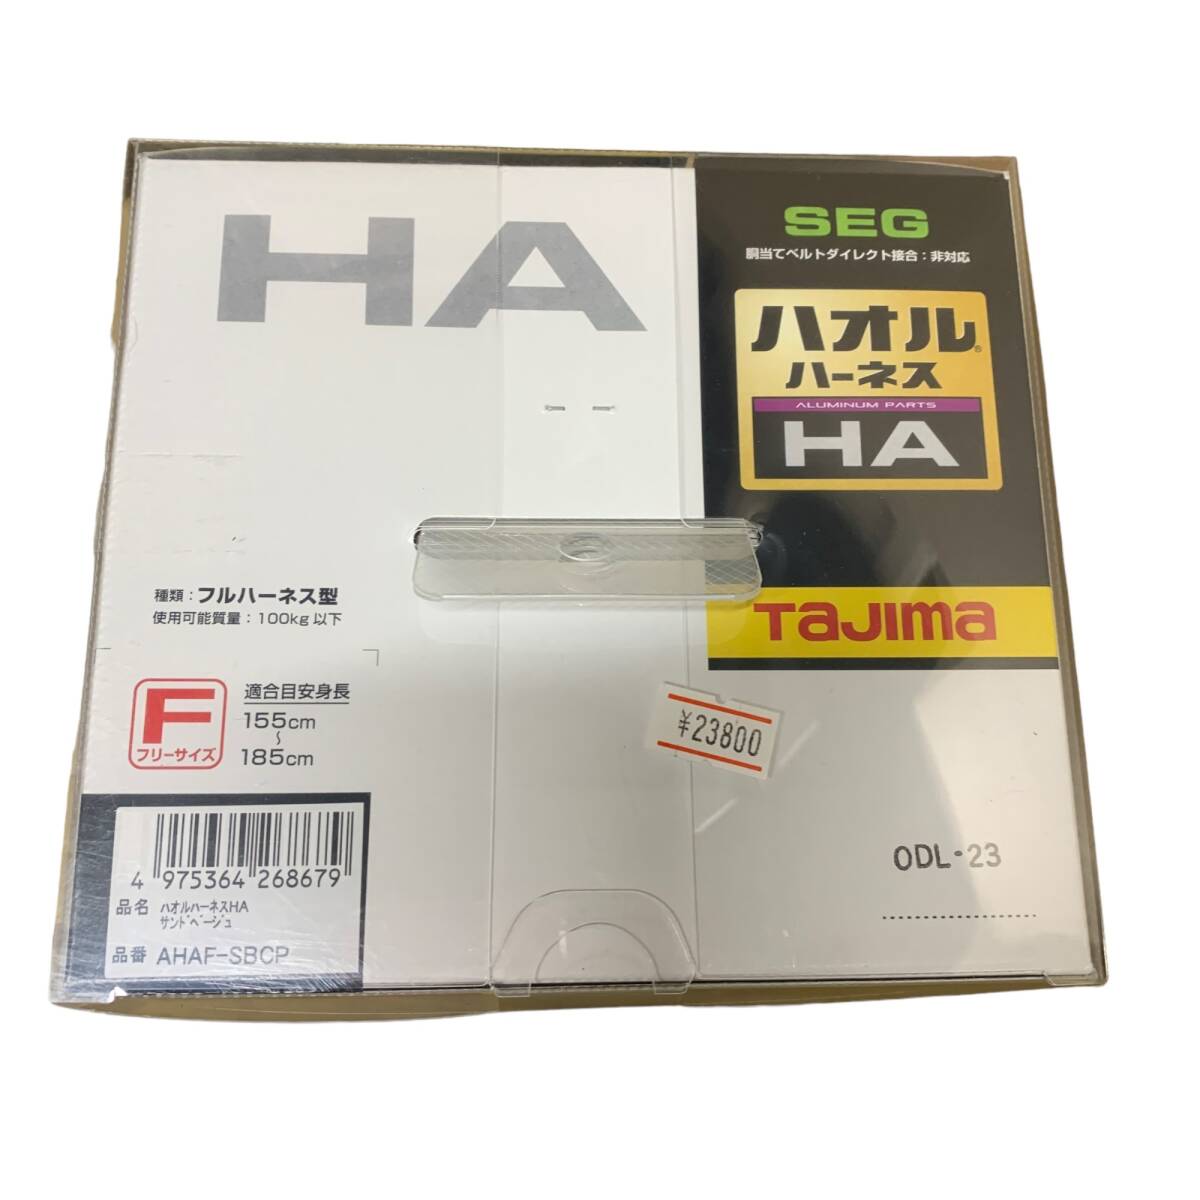 ◆未使用◆ Tajima タジマ ハオルハーネスHA サンドベージュ AHAF-SBCP フルハーネス型 F:フリーサイズ 軽量 アルミ製 ハーネス P57152NLの画像5